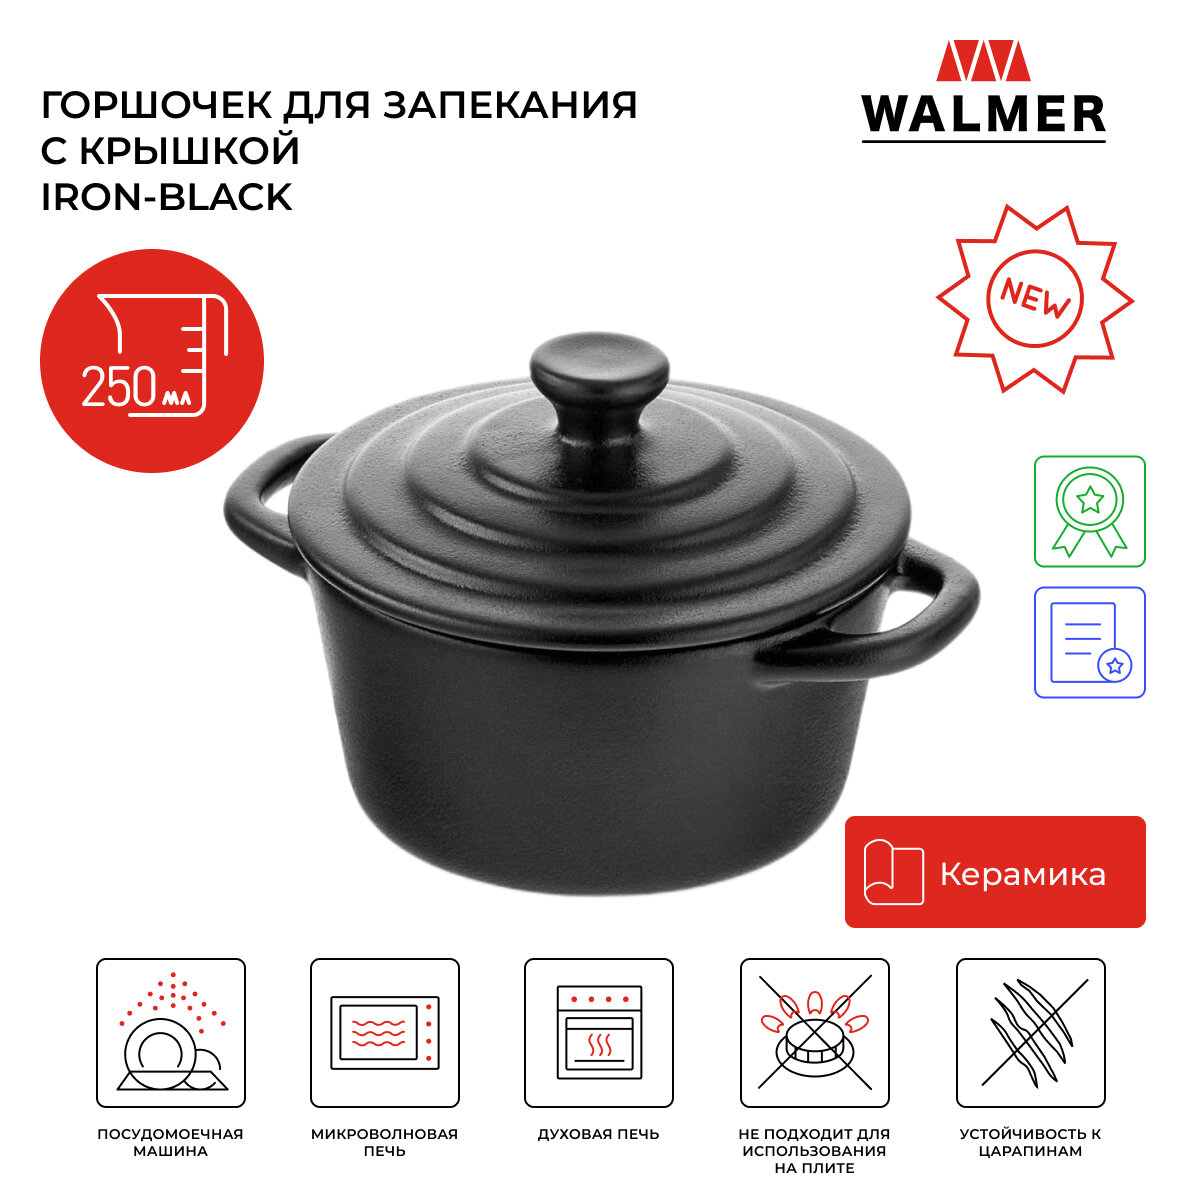 Горшочек для запекания с крышкой Walmer Iron-Black 10 см 0.25 л цвет черный